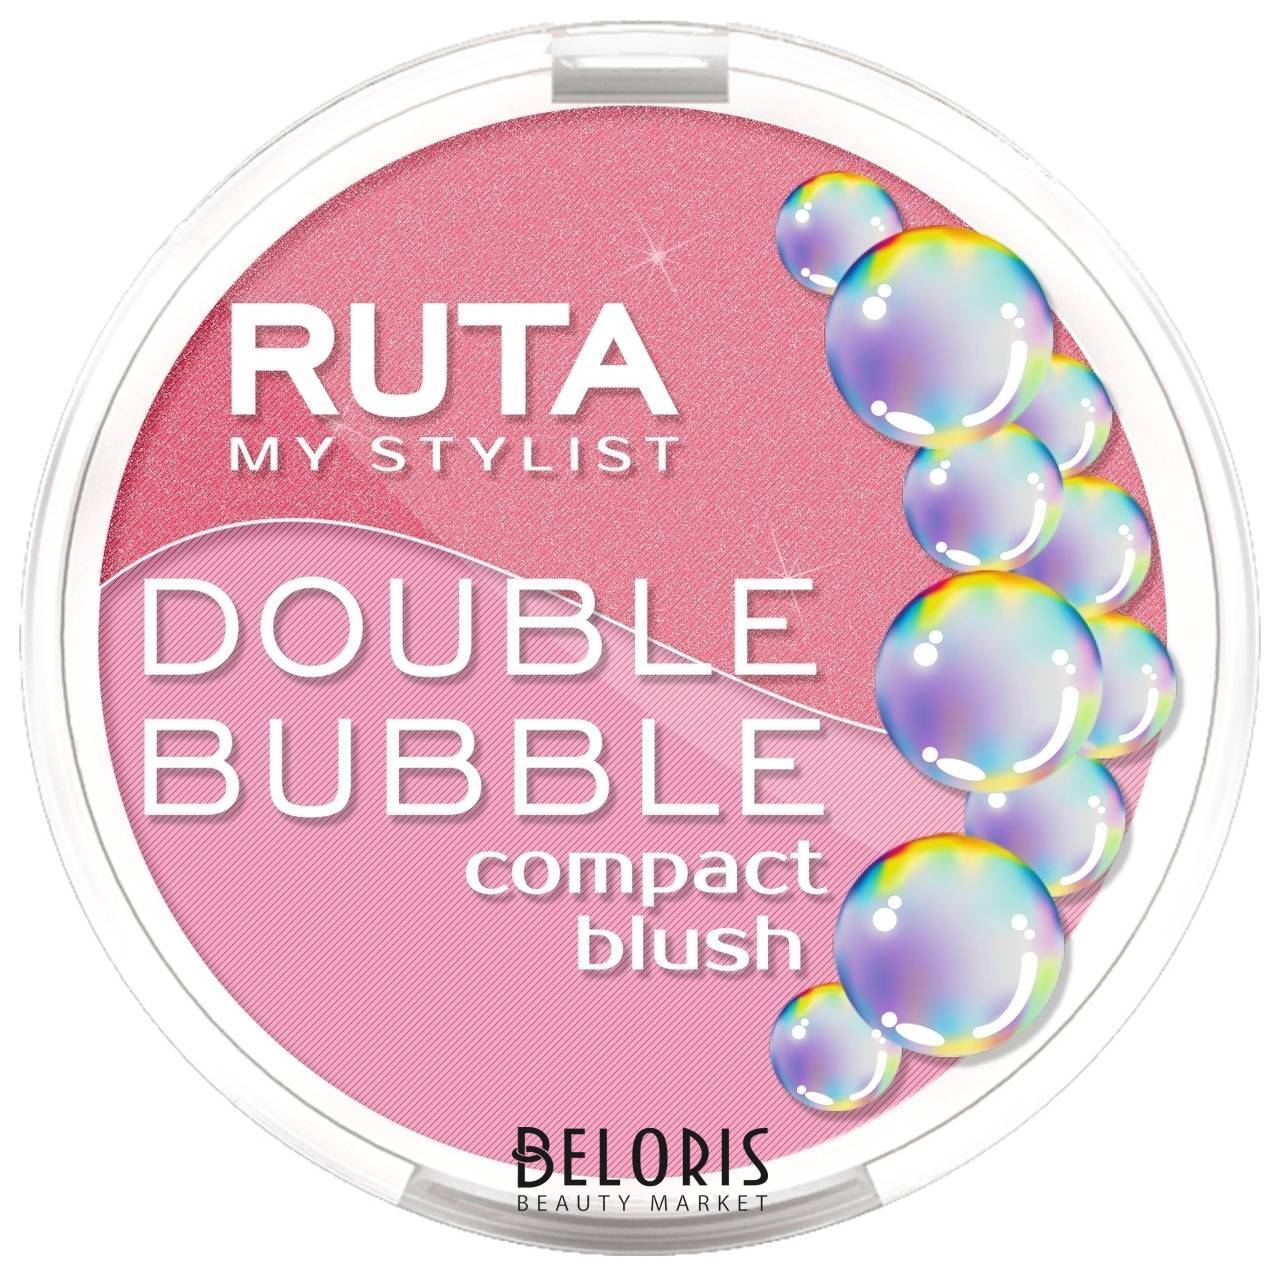 Румяна для лица двойные компактные Double Bubble Ruta